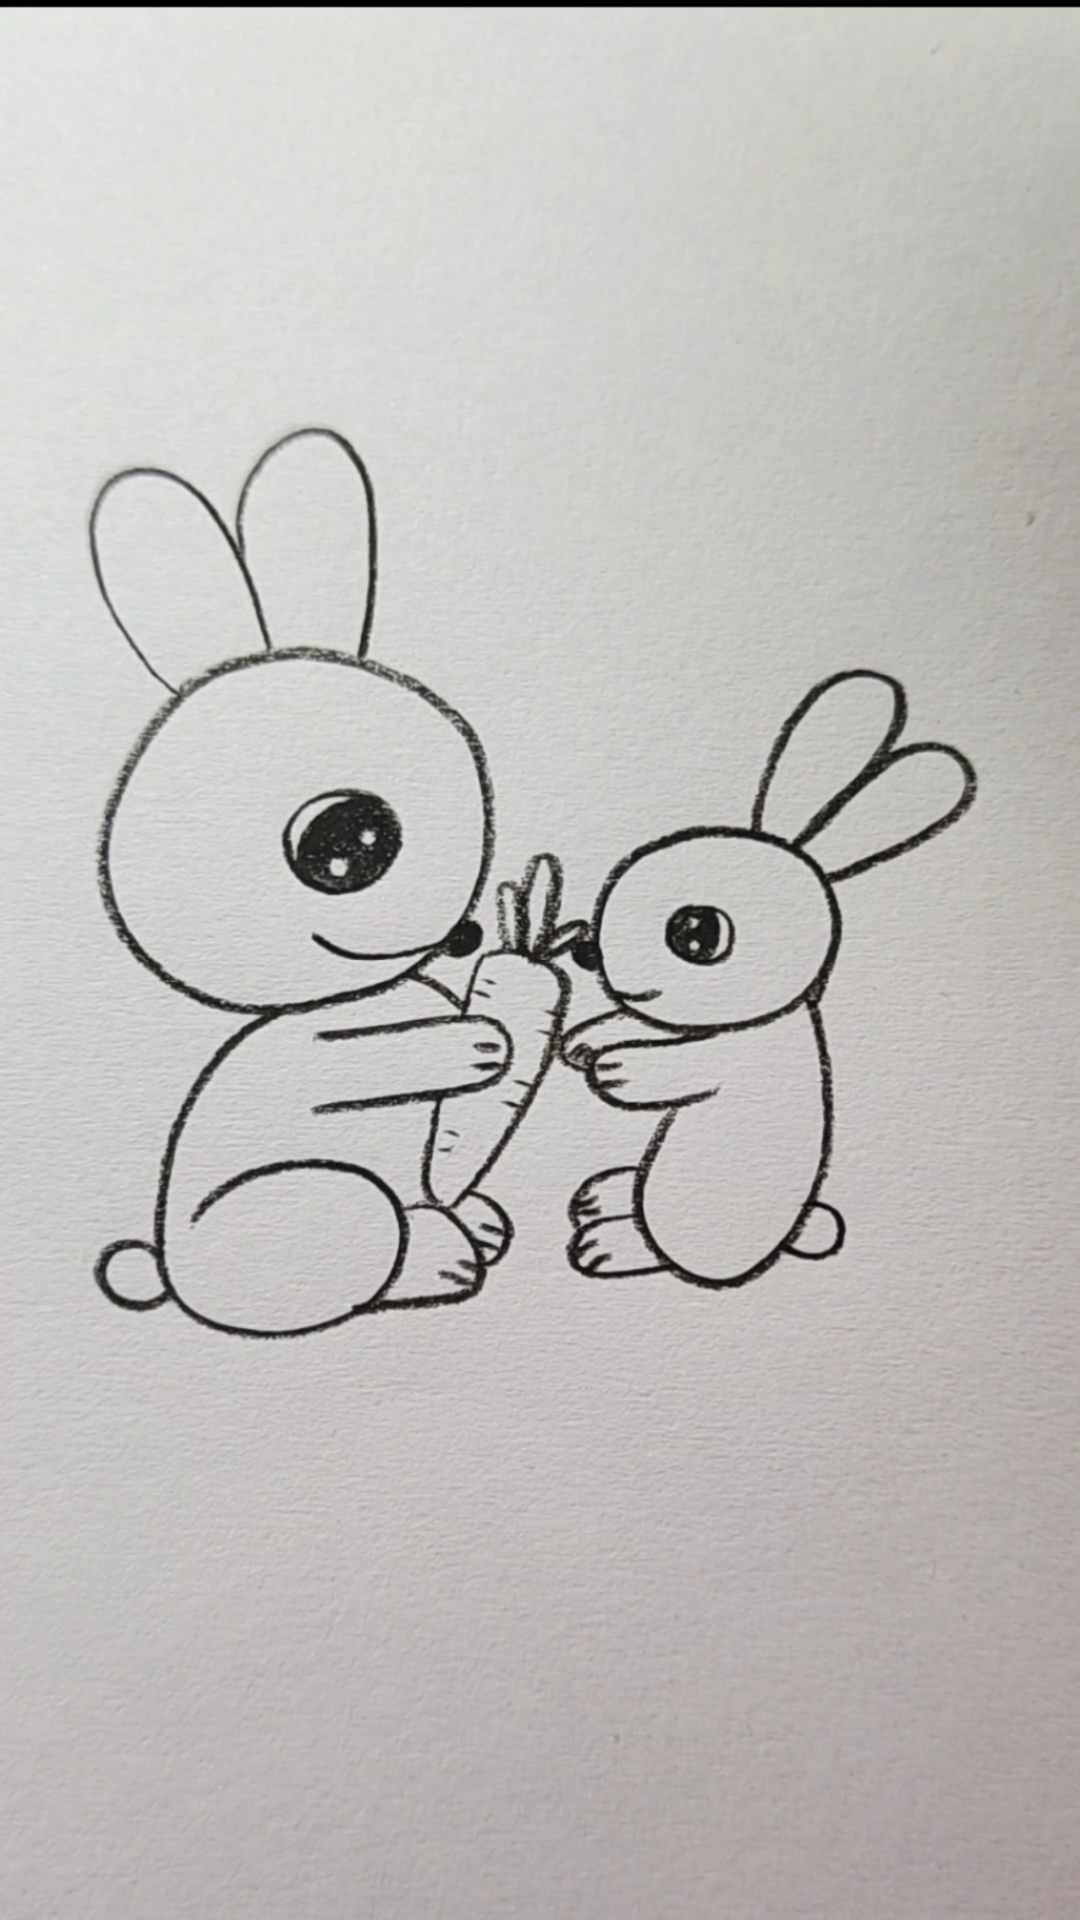 两只兔子简笔画简单图片